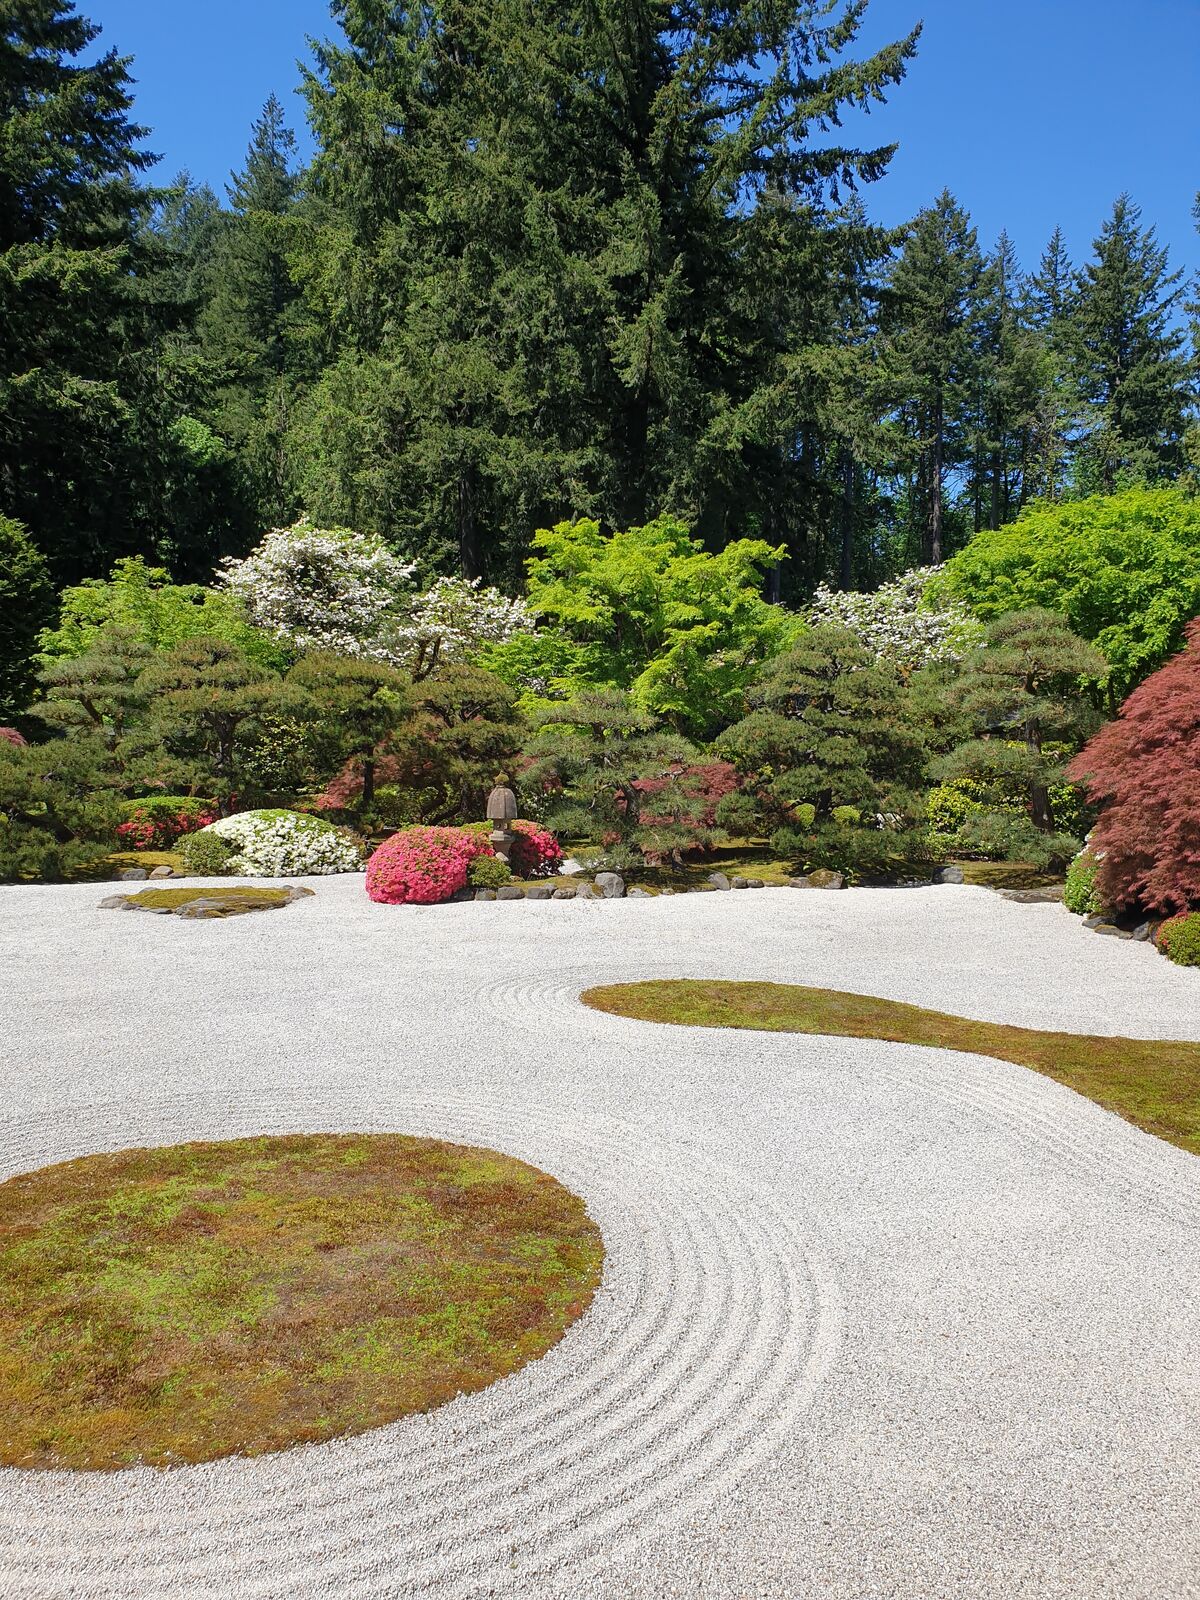 Portland has a stunning Japanese garden.